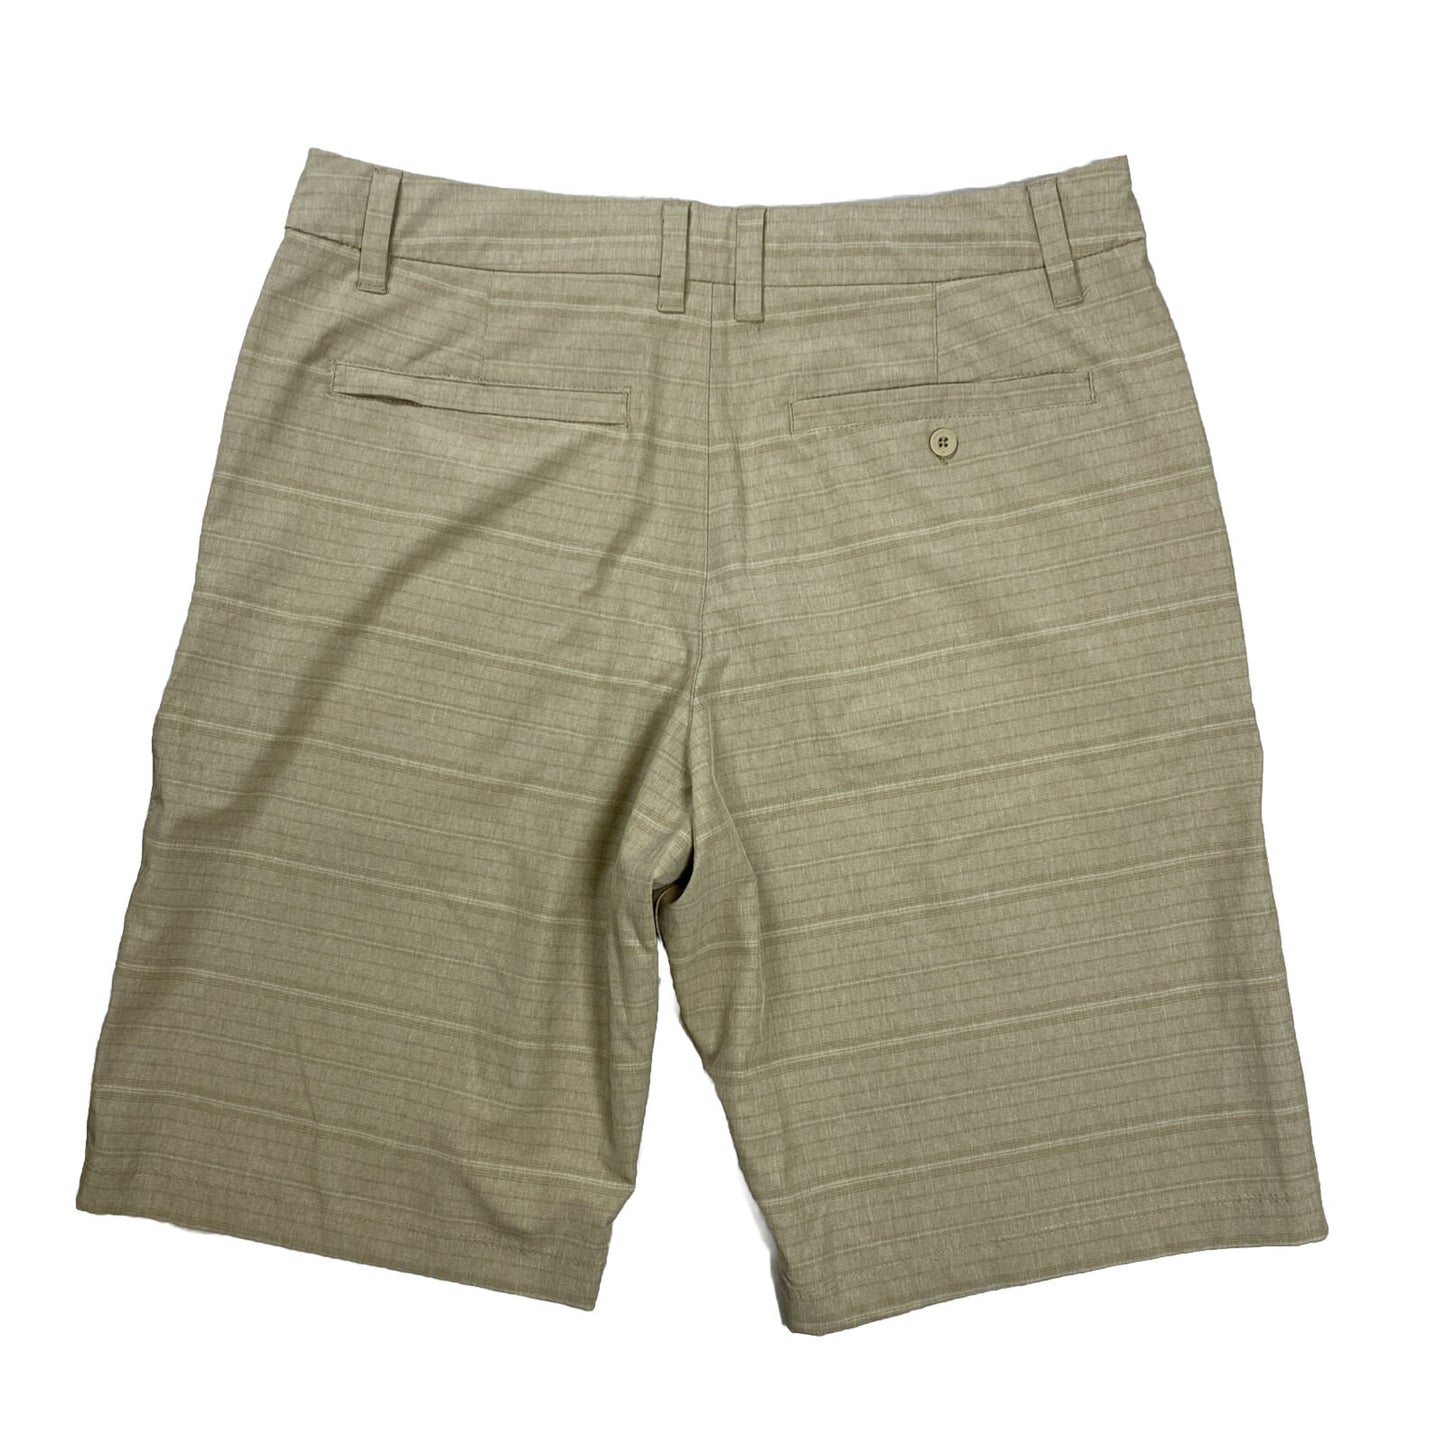 Hang Ten Shorts elásticos híbridos beige con cordón para hombre - 34